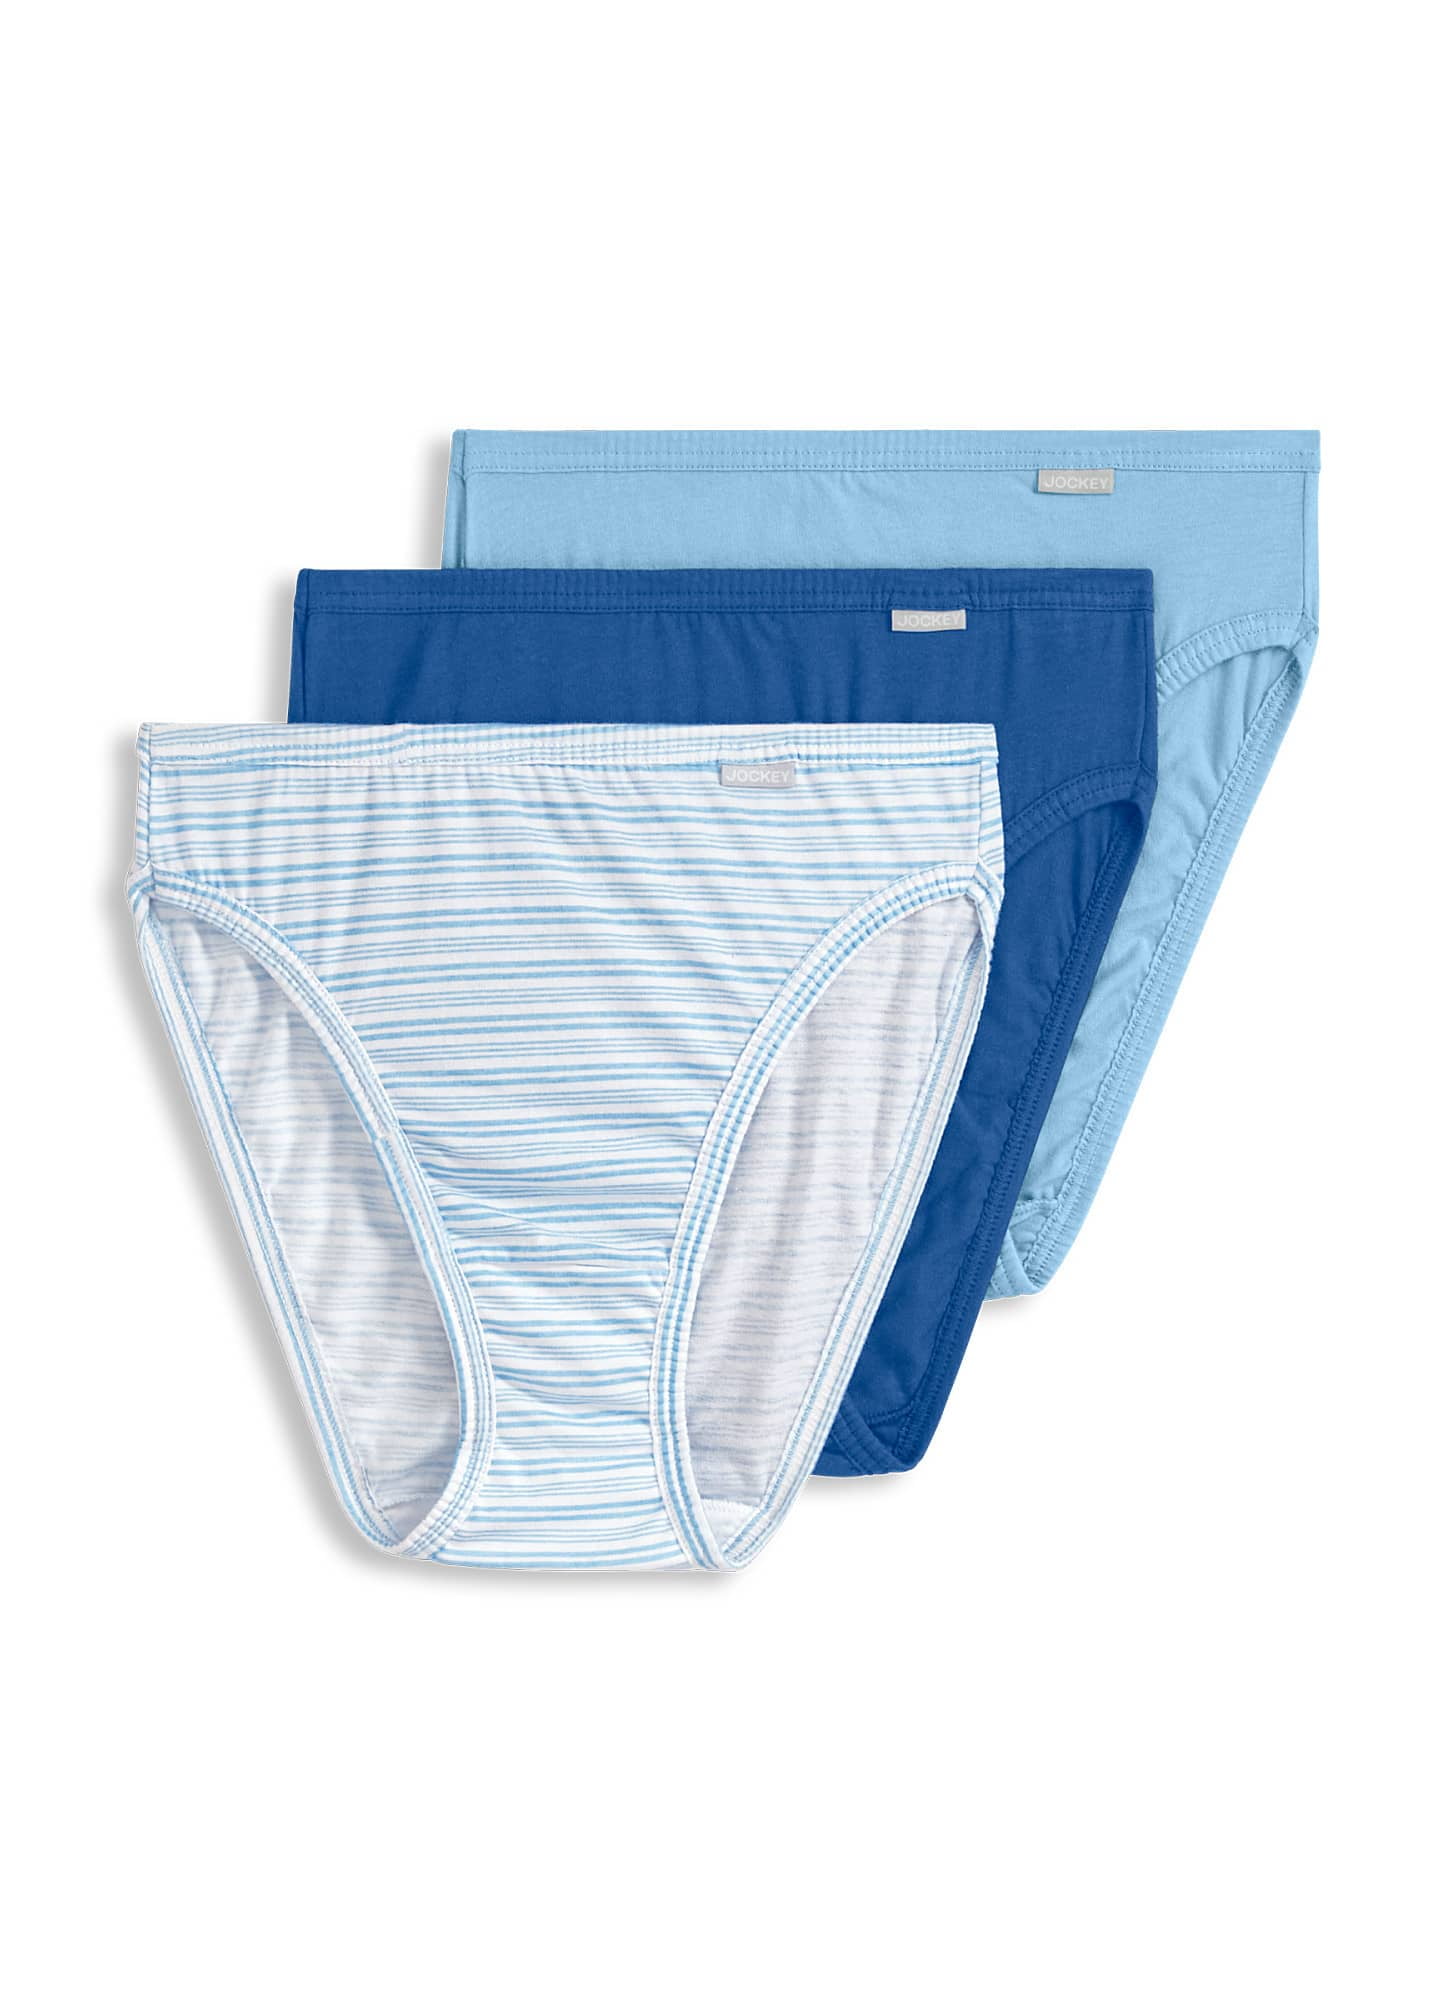 Jockey® Elance® French Cut Women's Underwear, 3 pk - Kroger